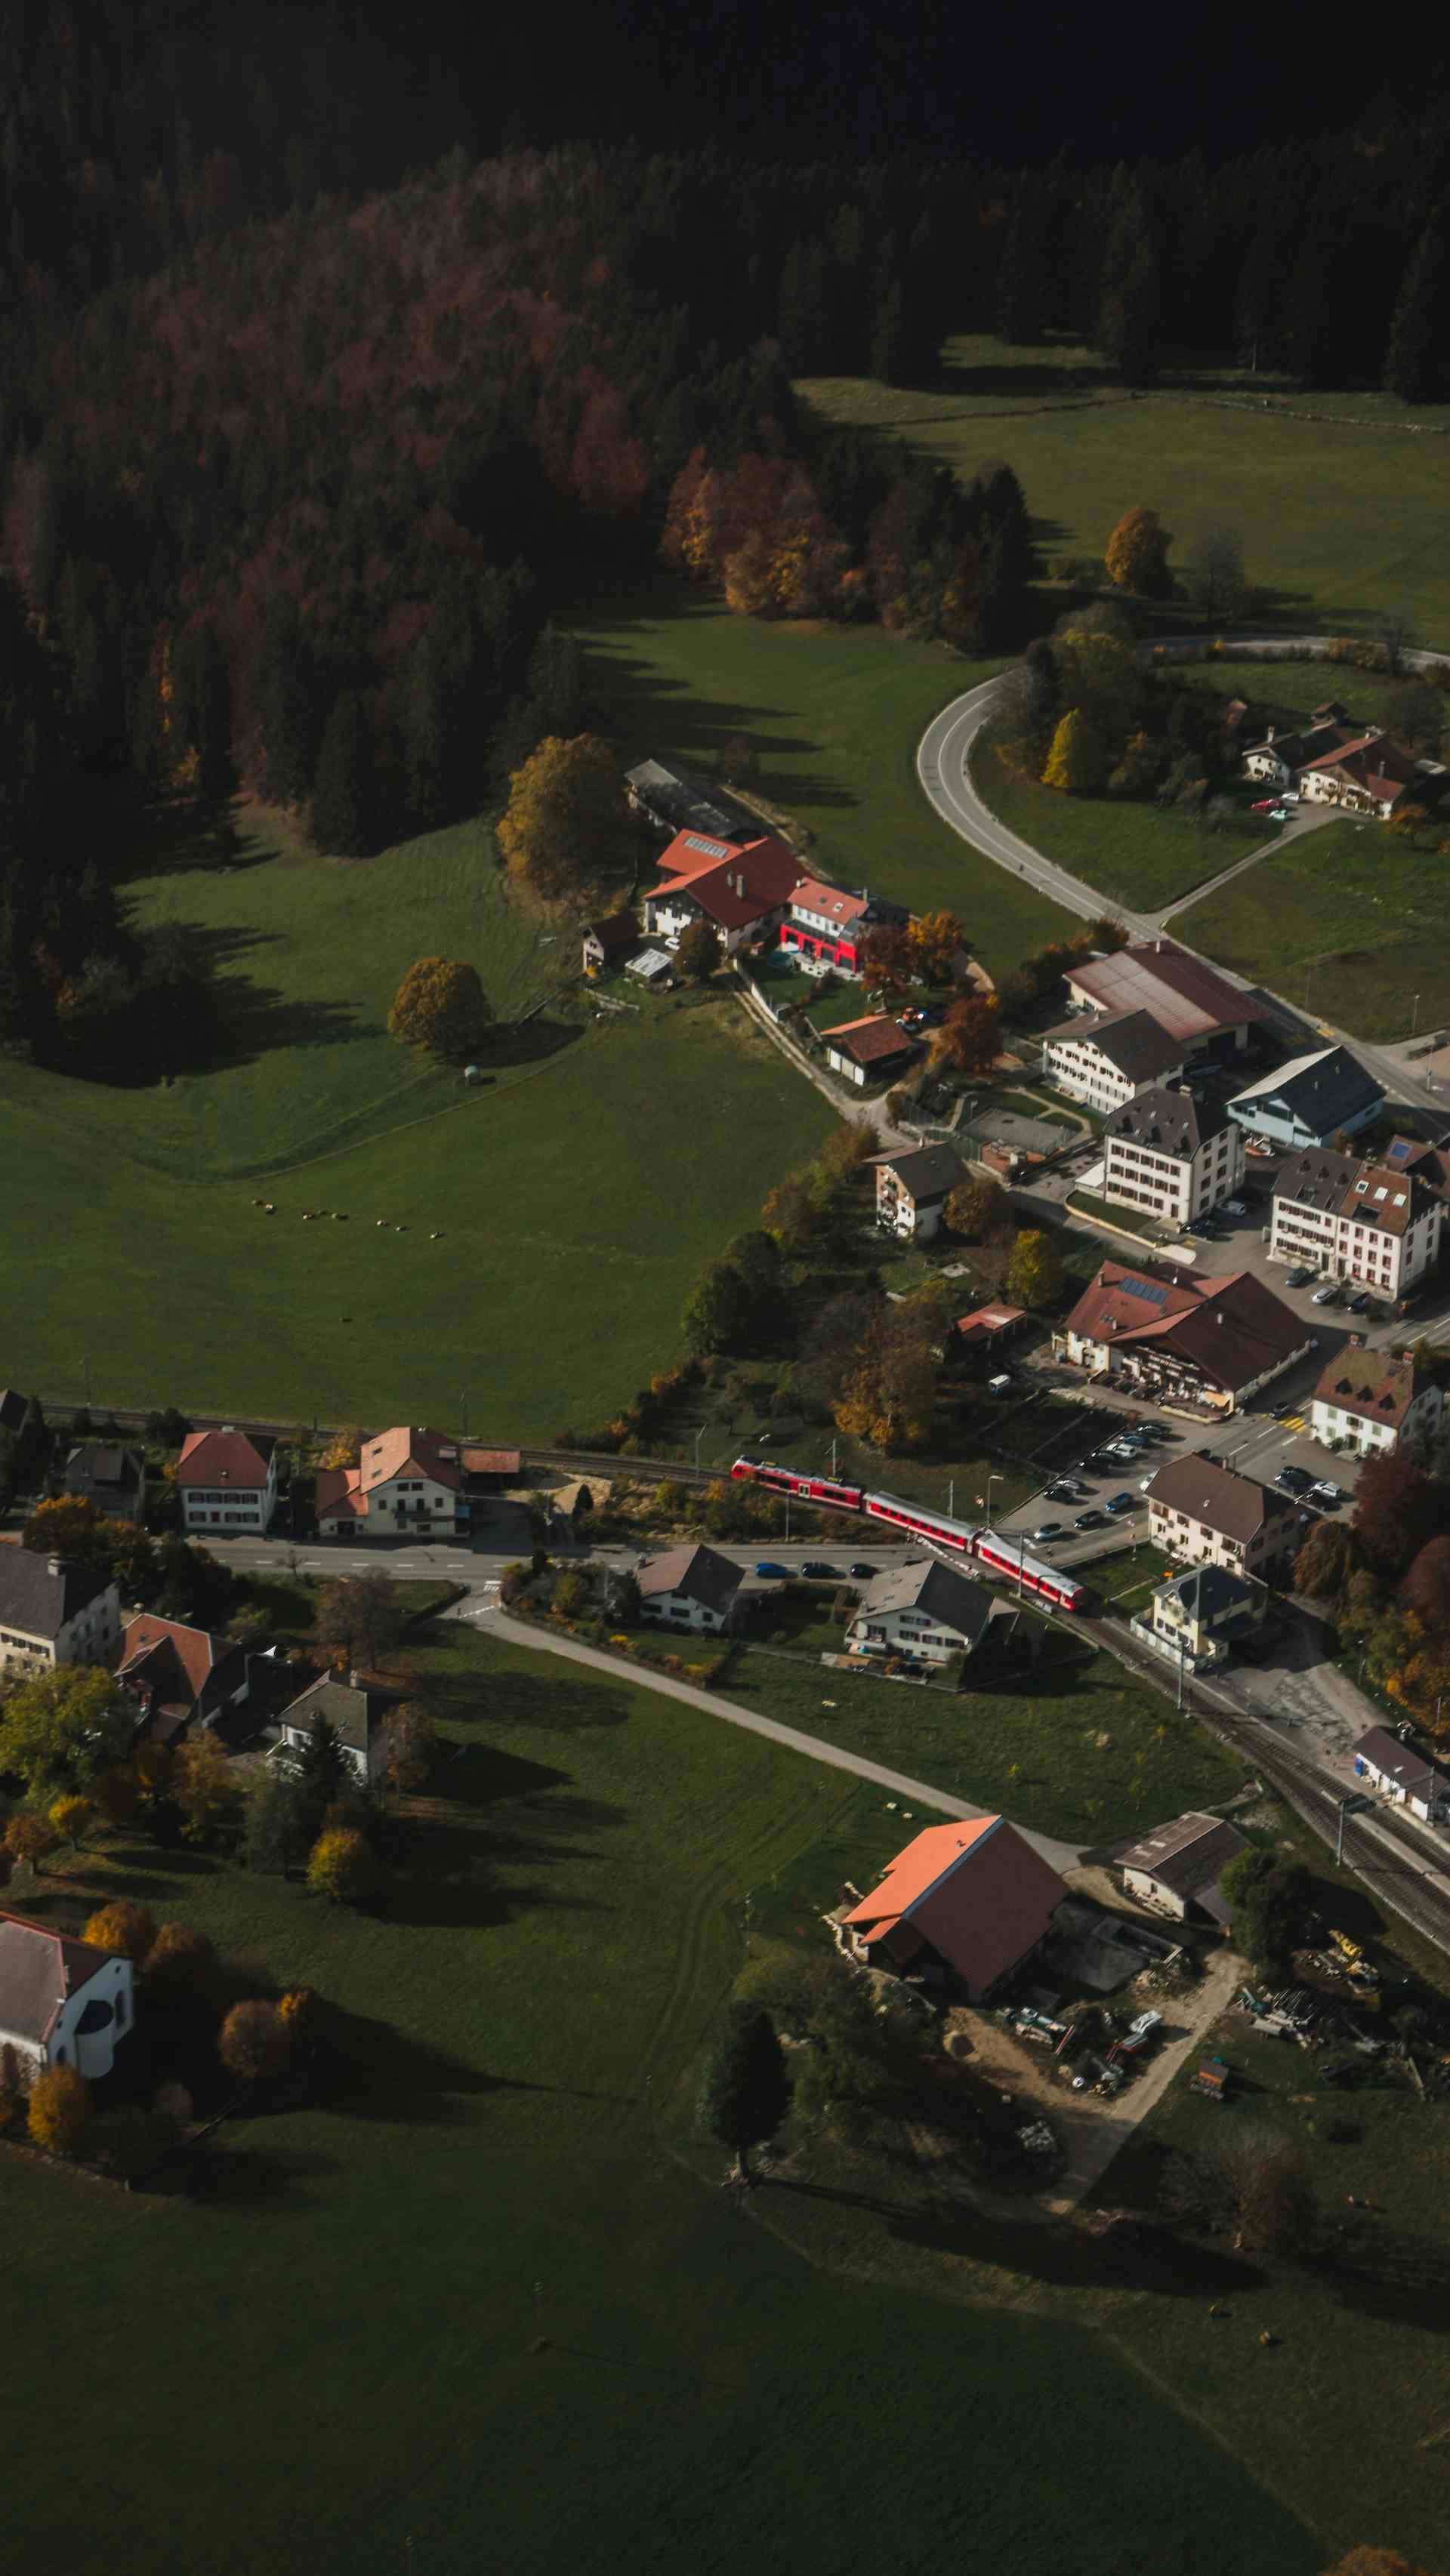 Tourisme Equestre, producteur à Courtedoux canton de Jura en Suisse